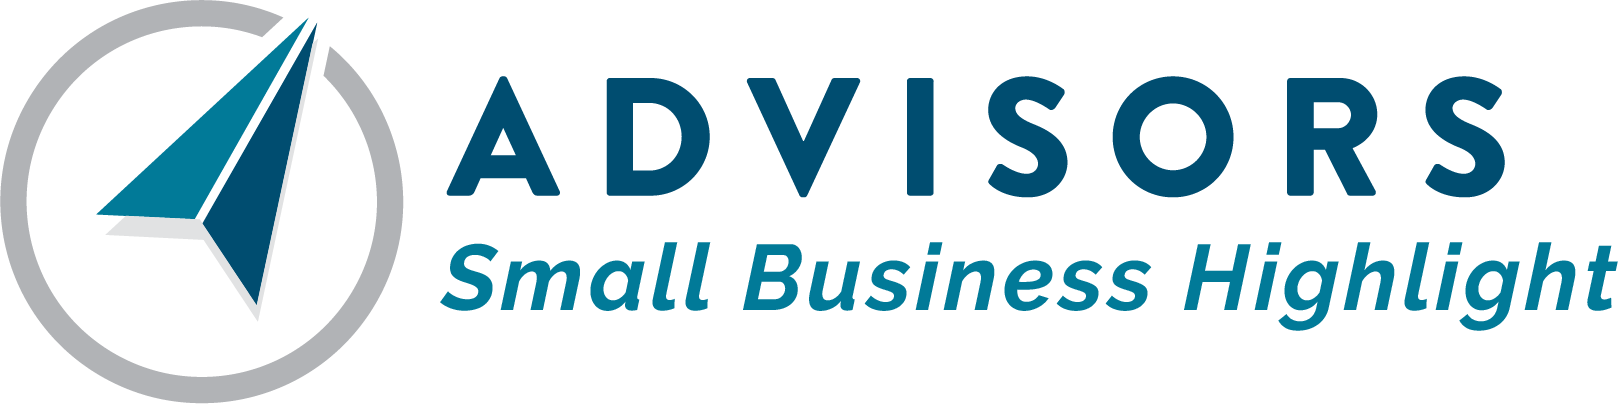 Advisors Insurance Agency Small Business Highlight